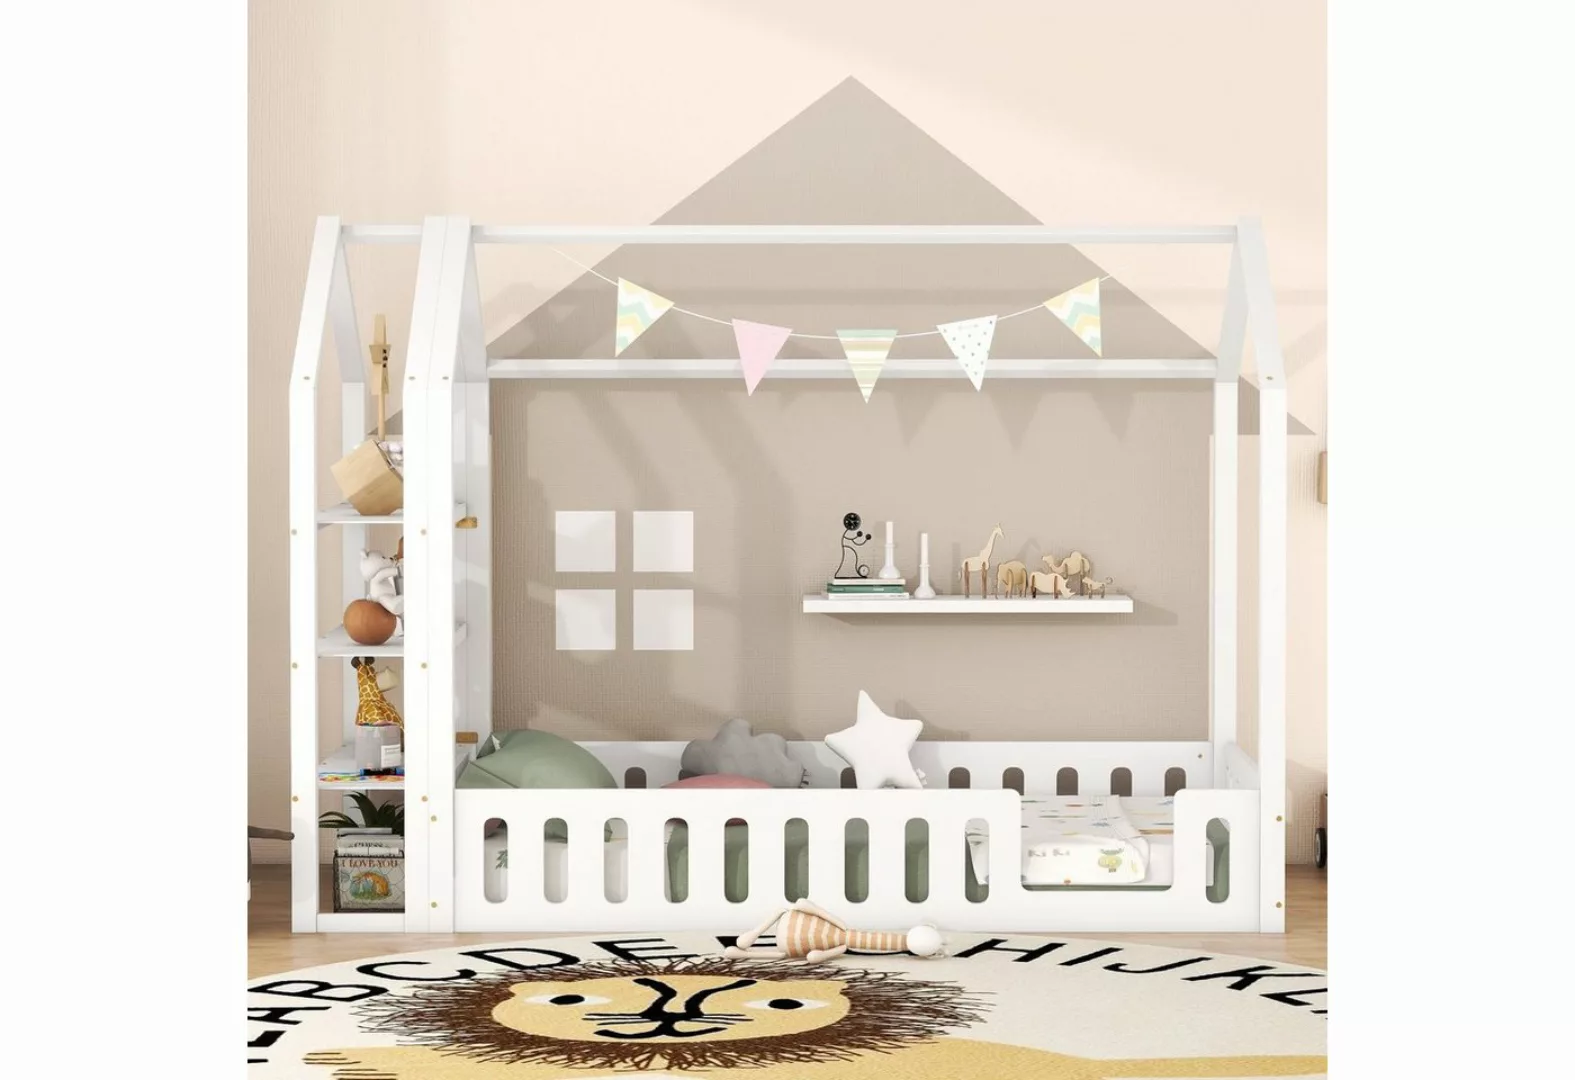 SOFTWEARY Hausbett mit Lattenrost (90x200 cm), Kinderbett mit Rausfallschut günstig online kaufen